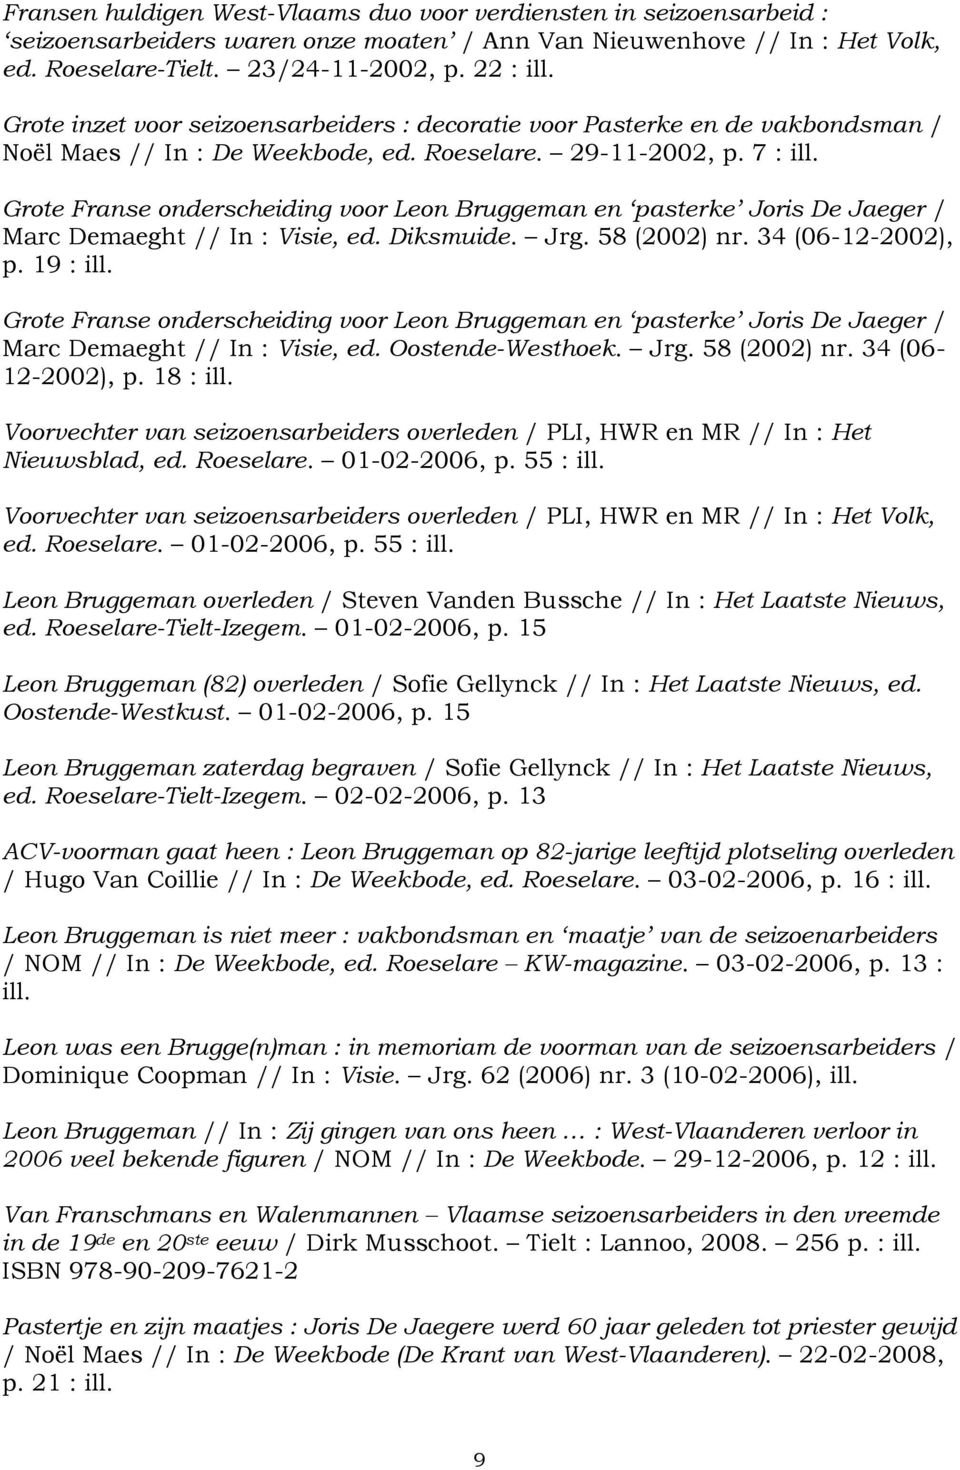 Grote Franse onderscheiding voor Leon Bruggeman en pasterke Joris De Jaeger / Marc Demaeght // In : Visie, ed. Diksmuide. Jrg. 58 (2002) nr. 34 (06-12-2002), p. 19 : ill.